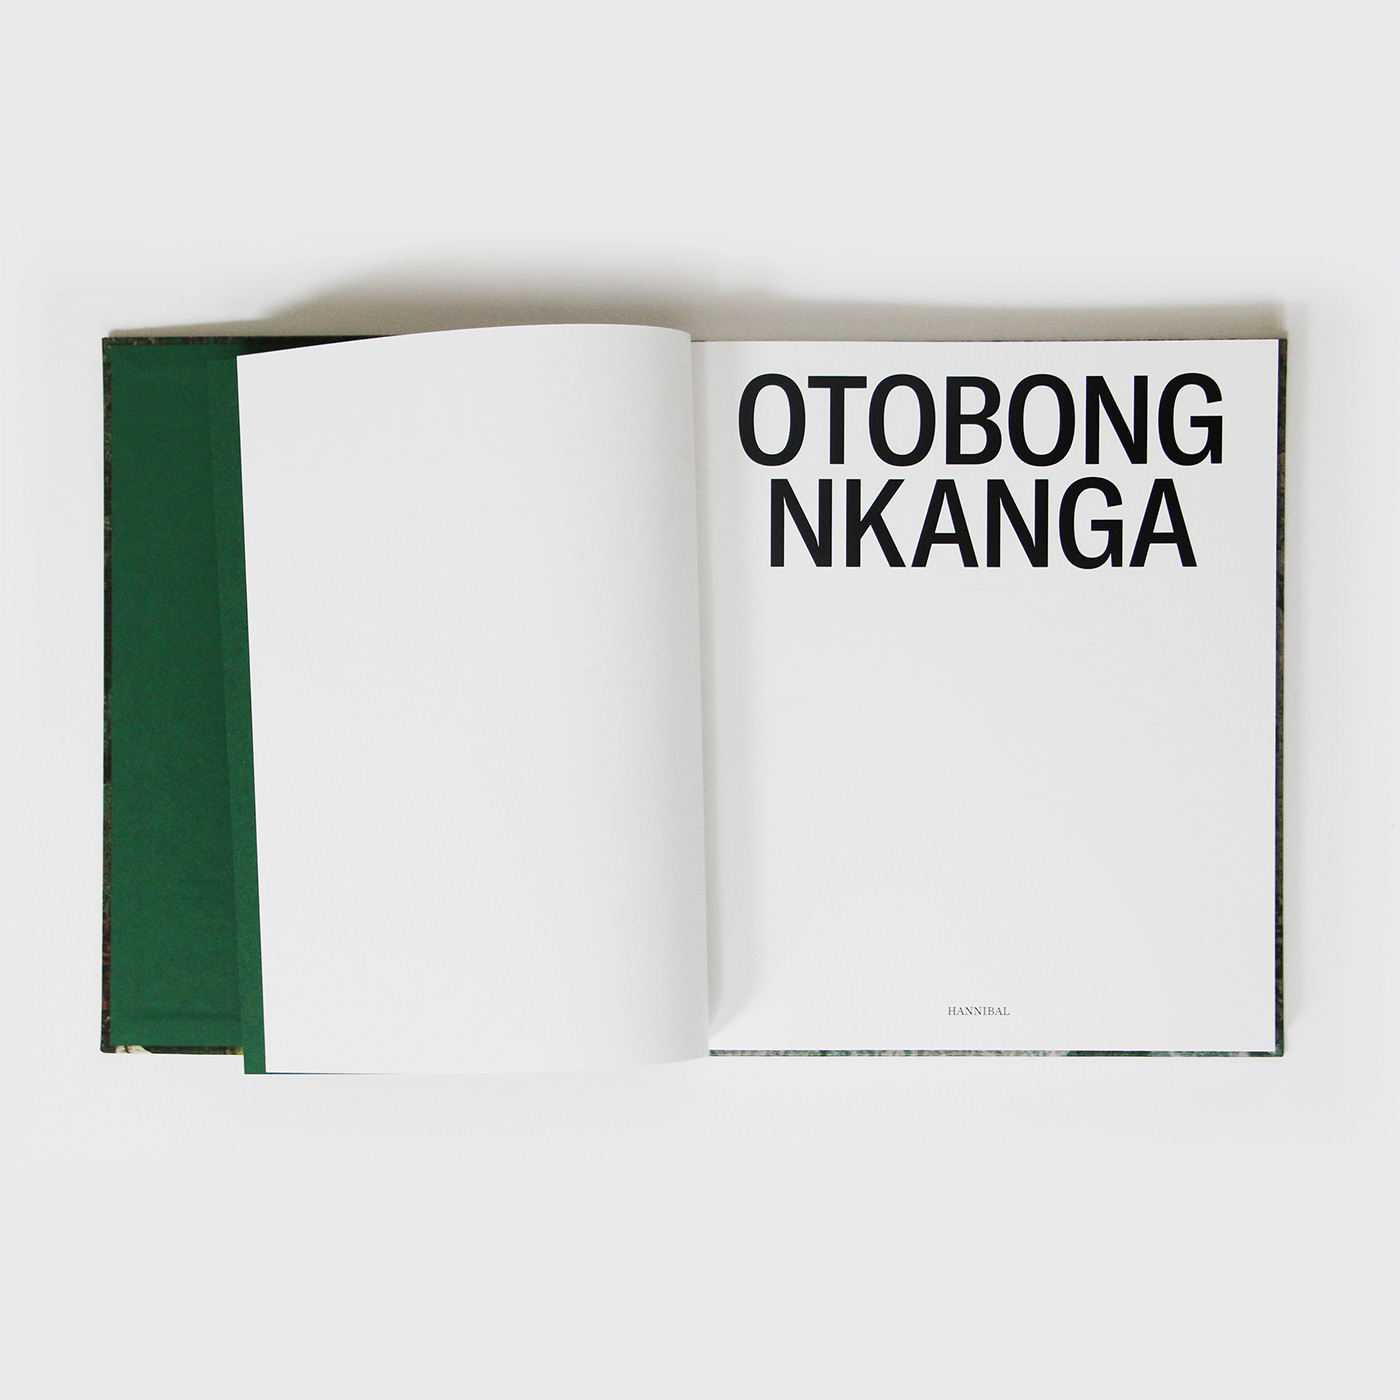 African Art artbook book design Catalogue design hotfoil linen book museum book otoloog nkanga